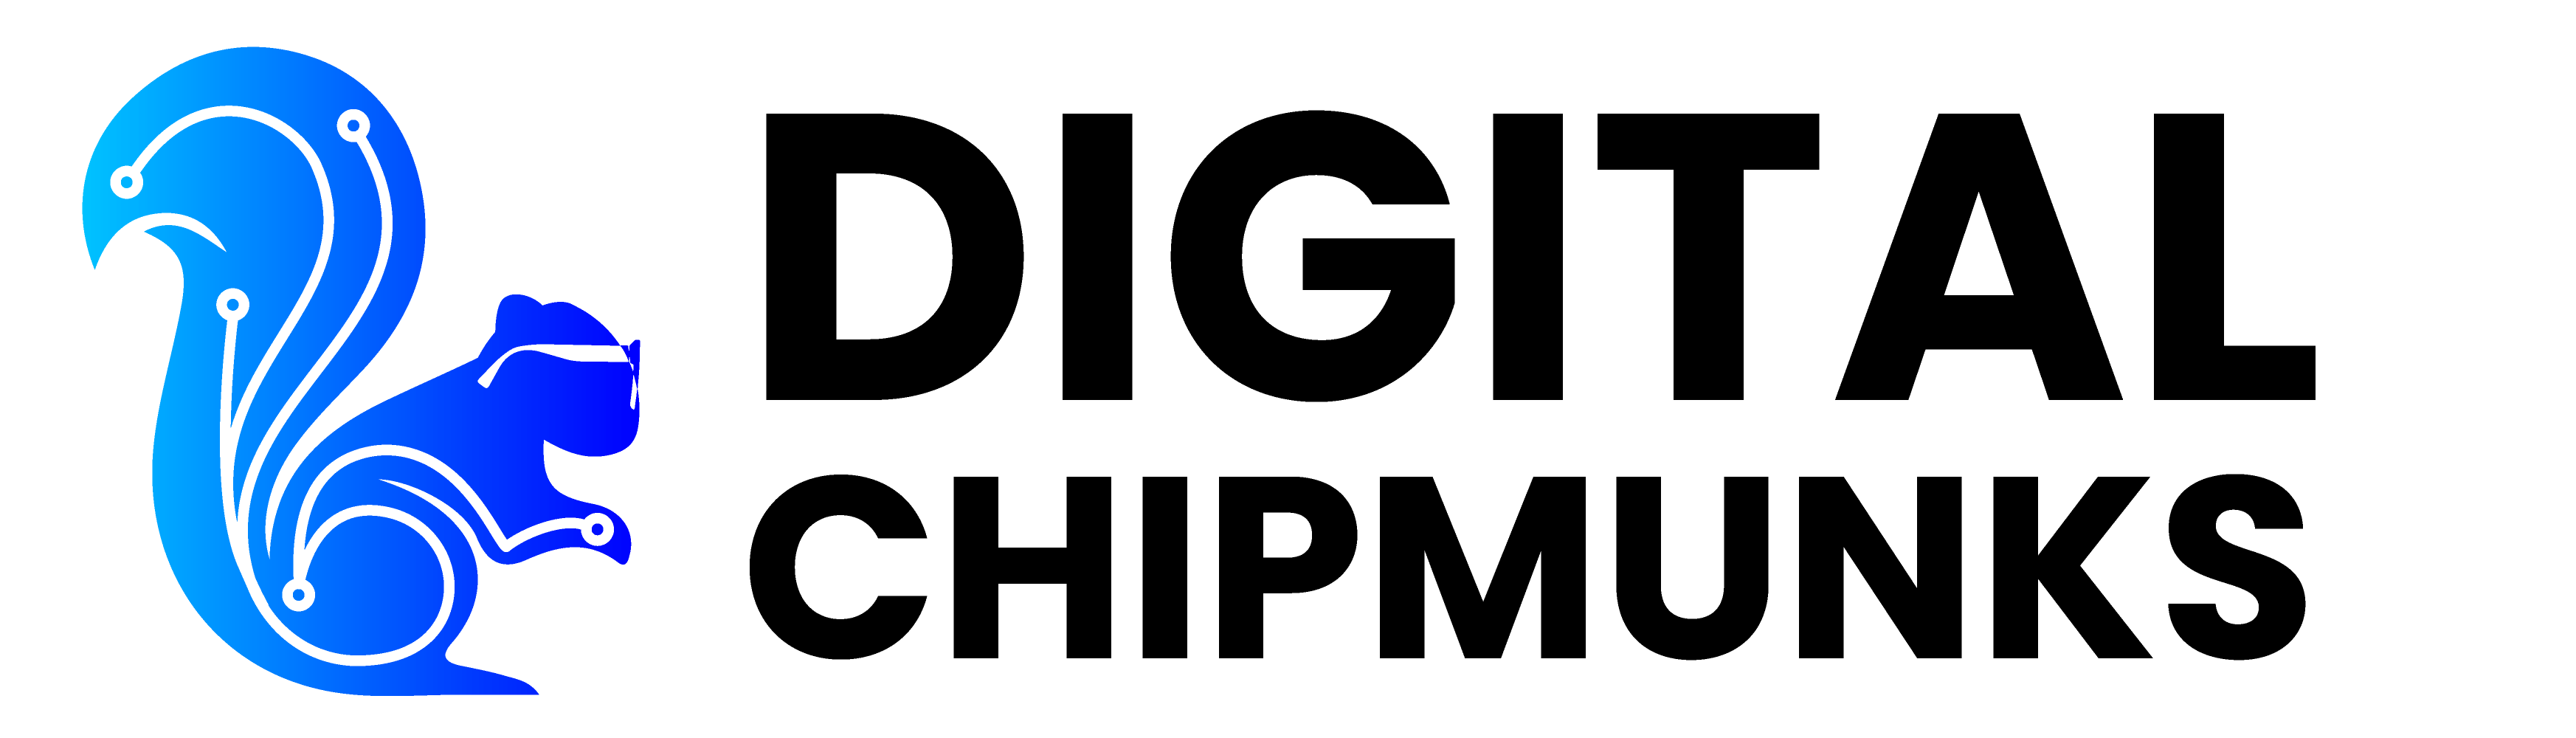 Digital Chipmunks